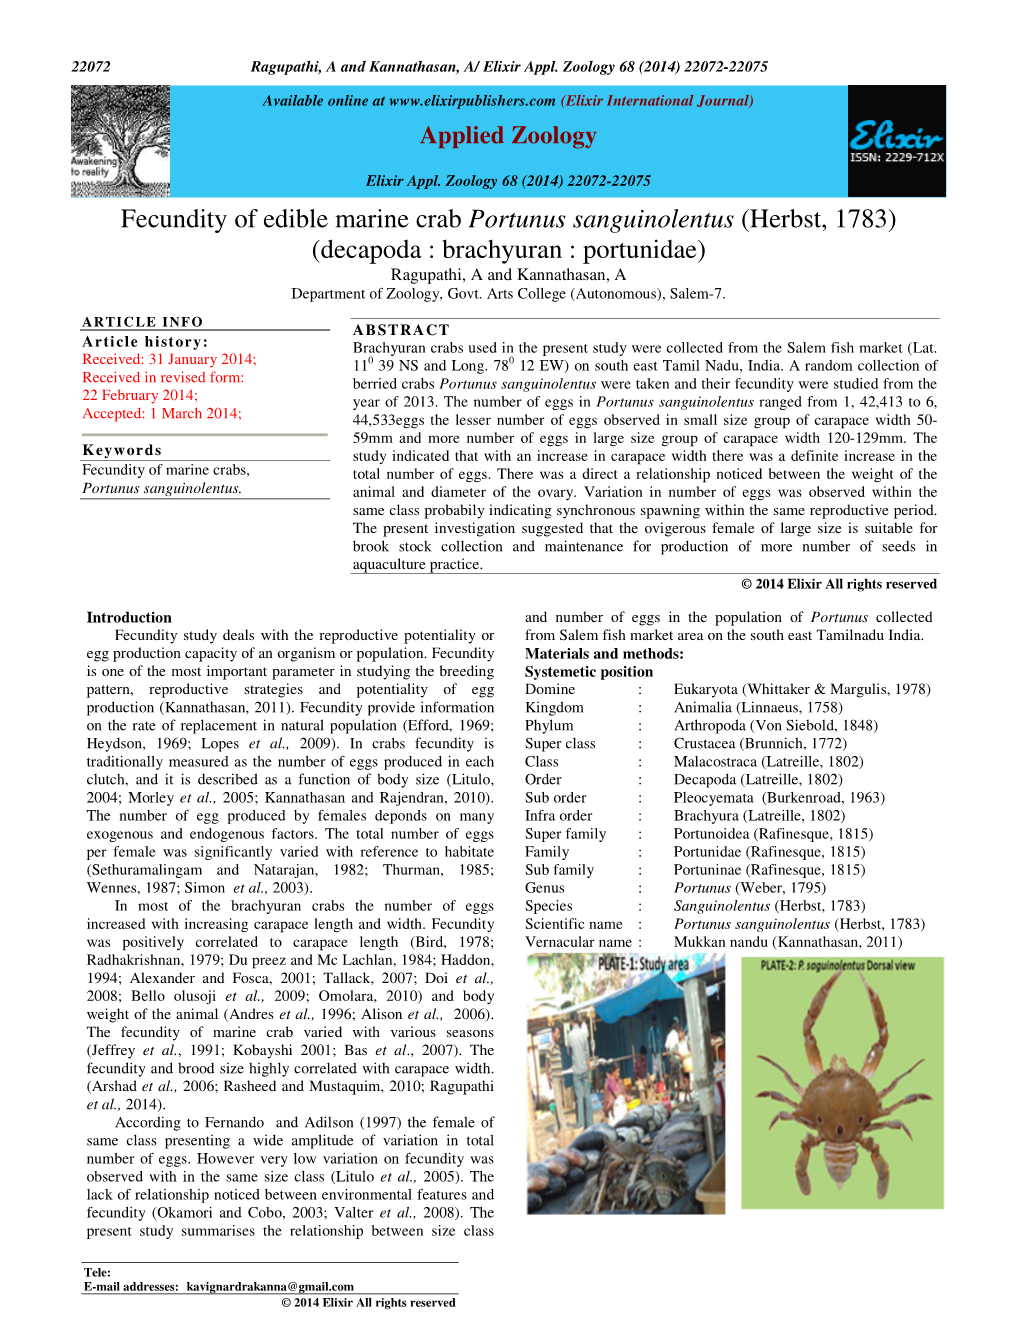 Fecundity of Edible Marine Crab Portunus Sanguinolentus (Herbst